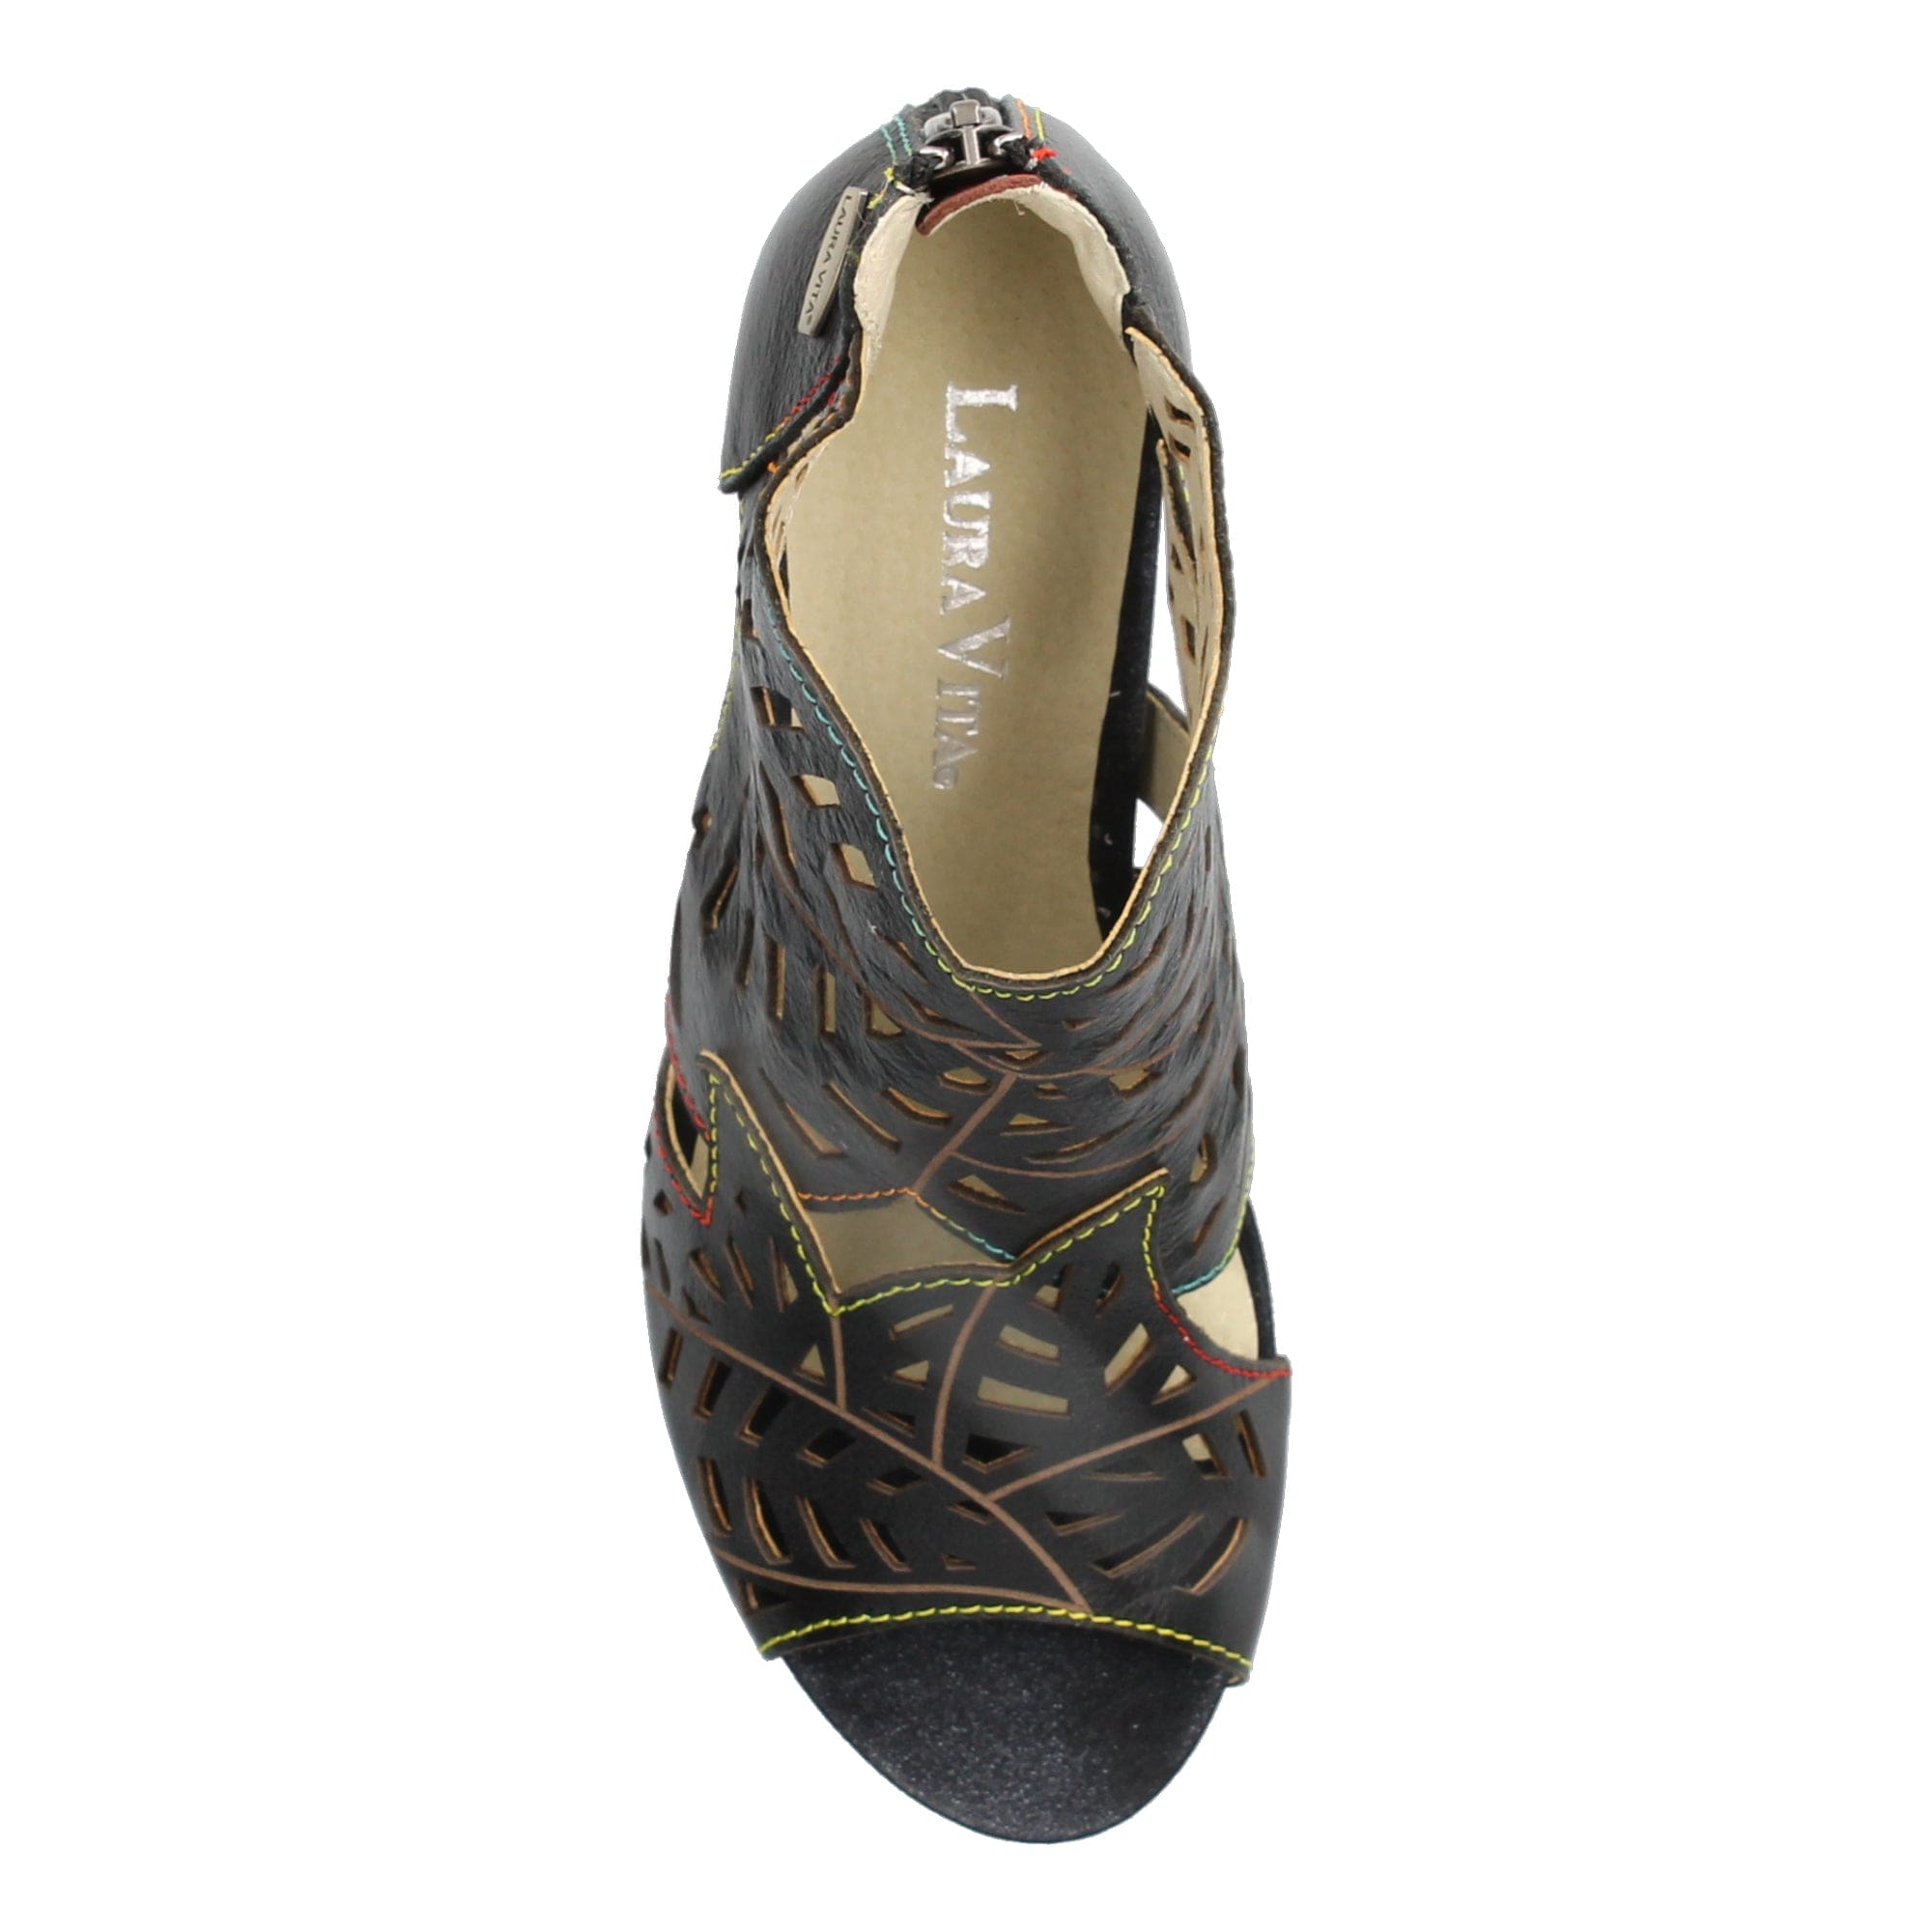 Shoe DACXO 0123 - Sandal